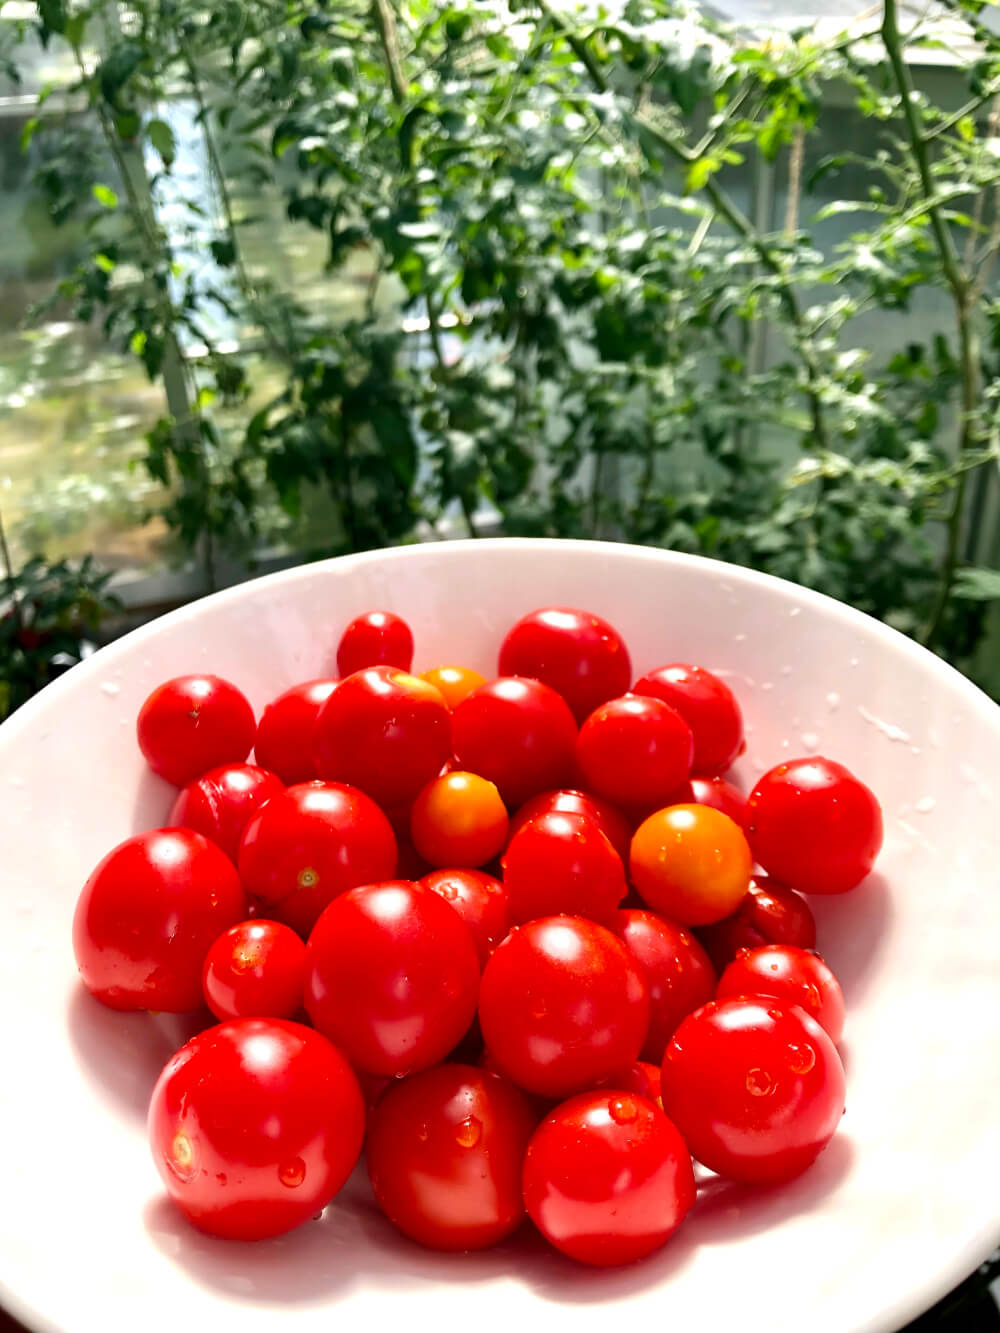 Tomaatin kasvatus ämpärissä ja ruukussa: Näin onnistut helposti